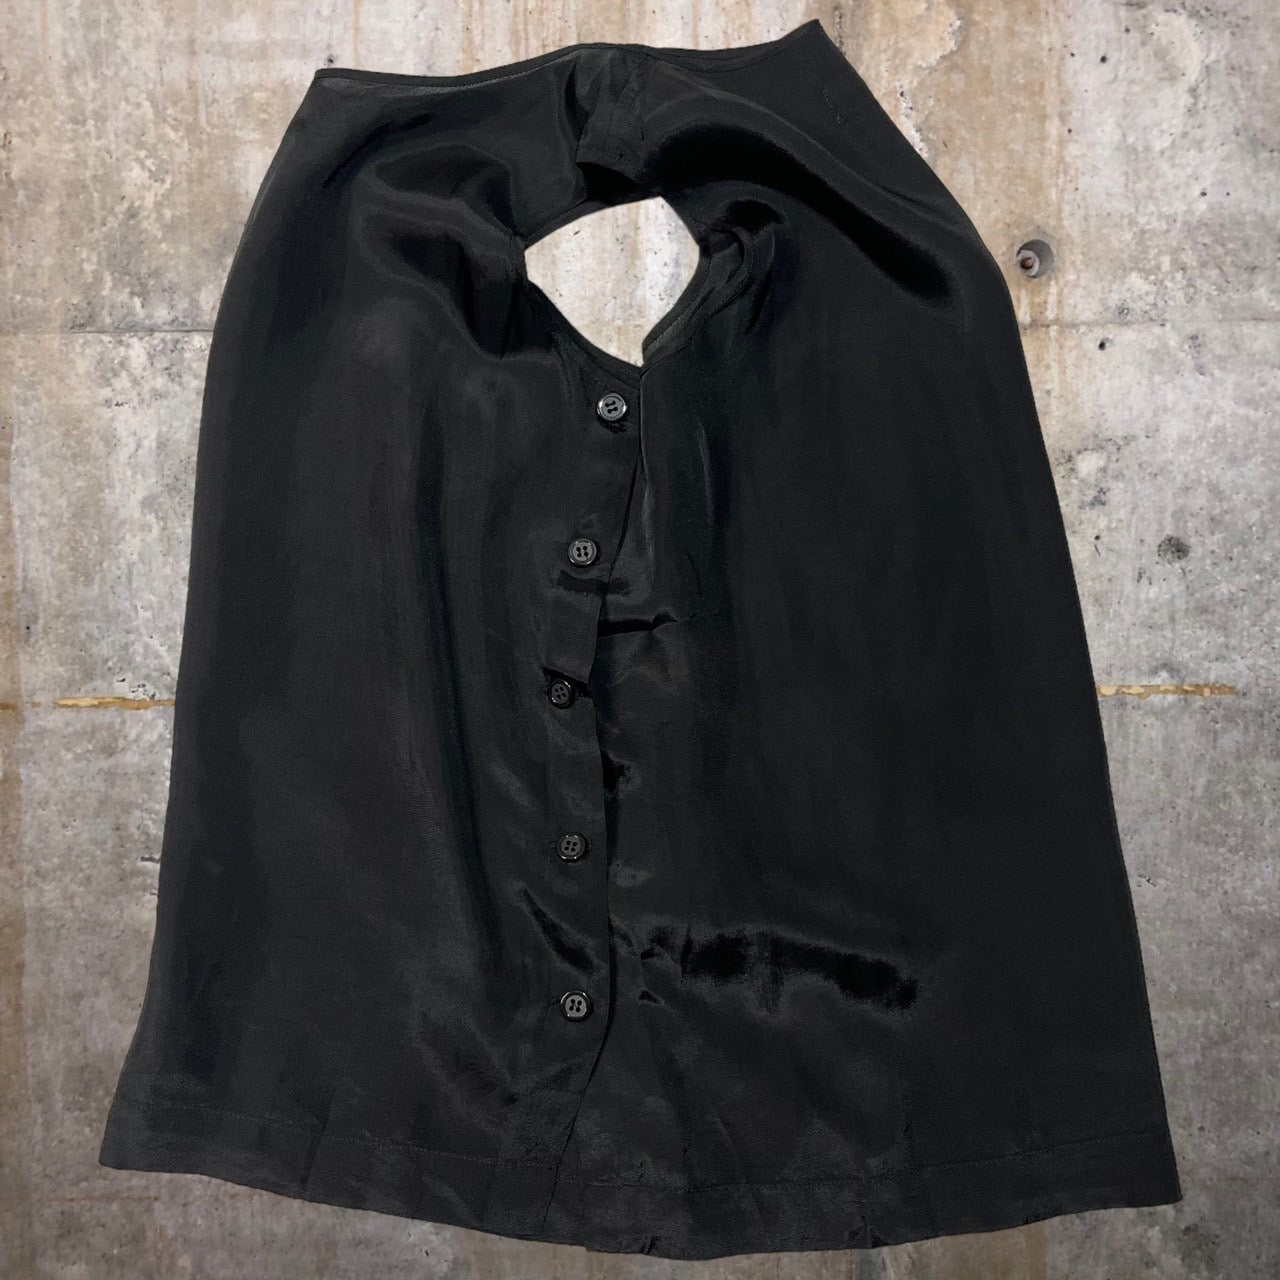 robe de chambre COMME des GARCONS(ローブドシャンブルコムデギャルソン) 80'sサイドボタンレーヨンベスト RB-020040 表記なし(S~M程度) ブラック AD1989